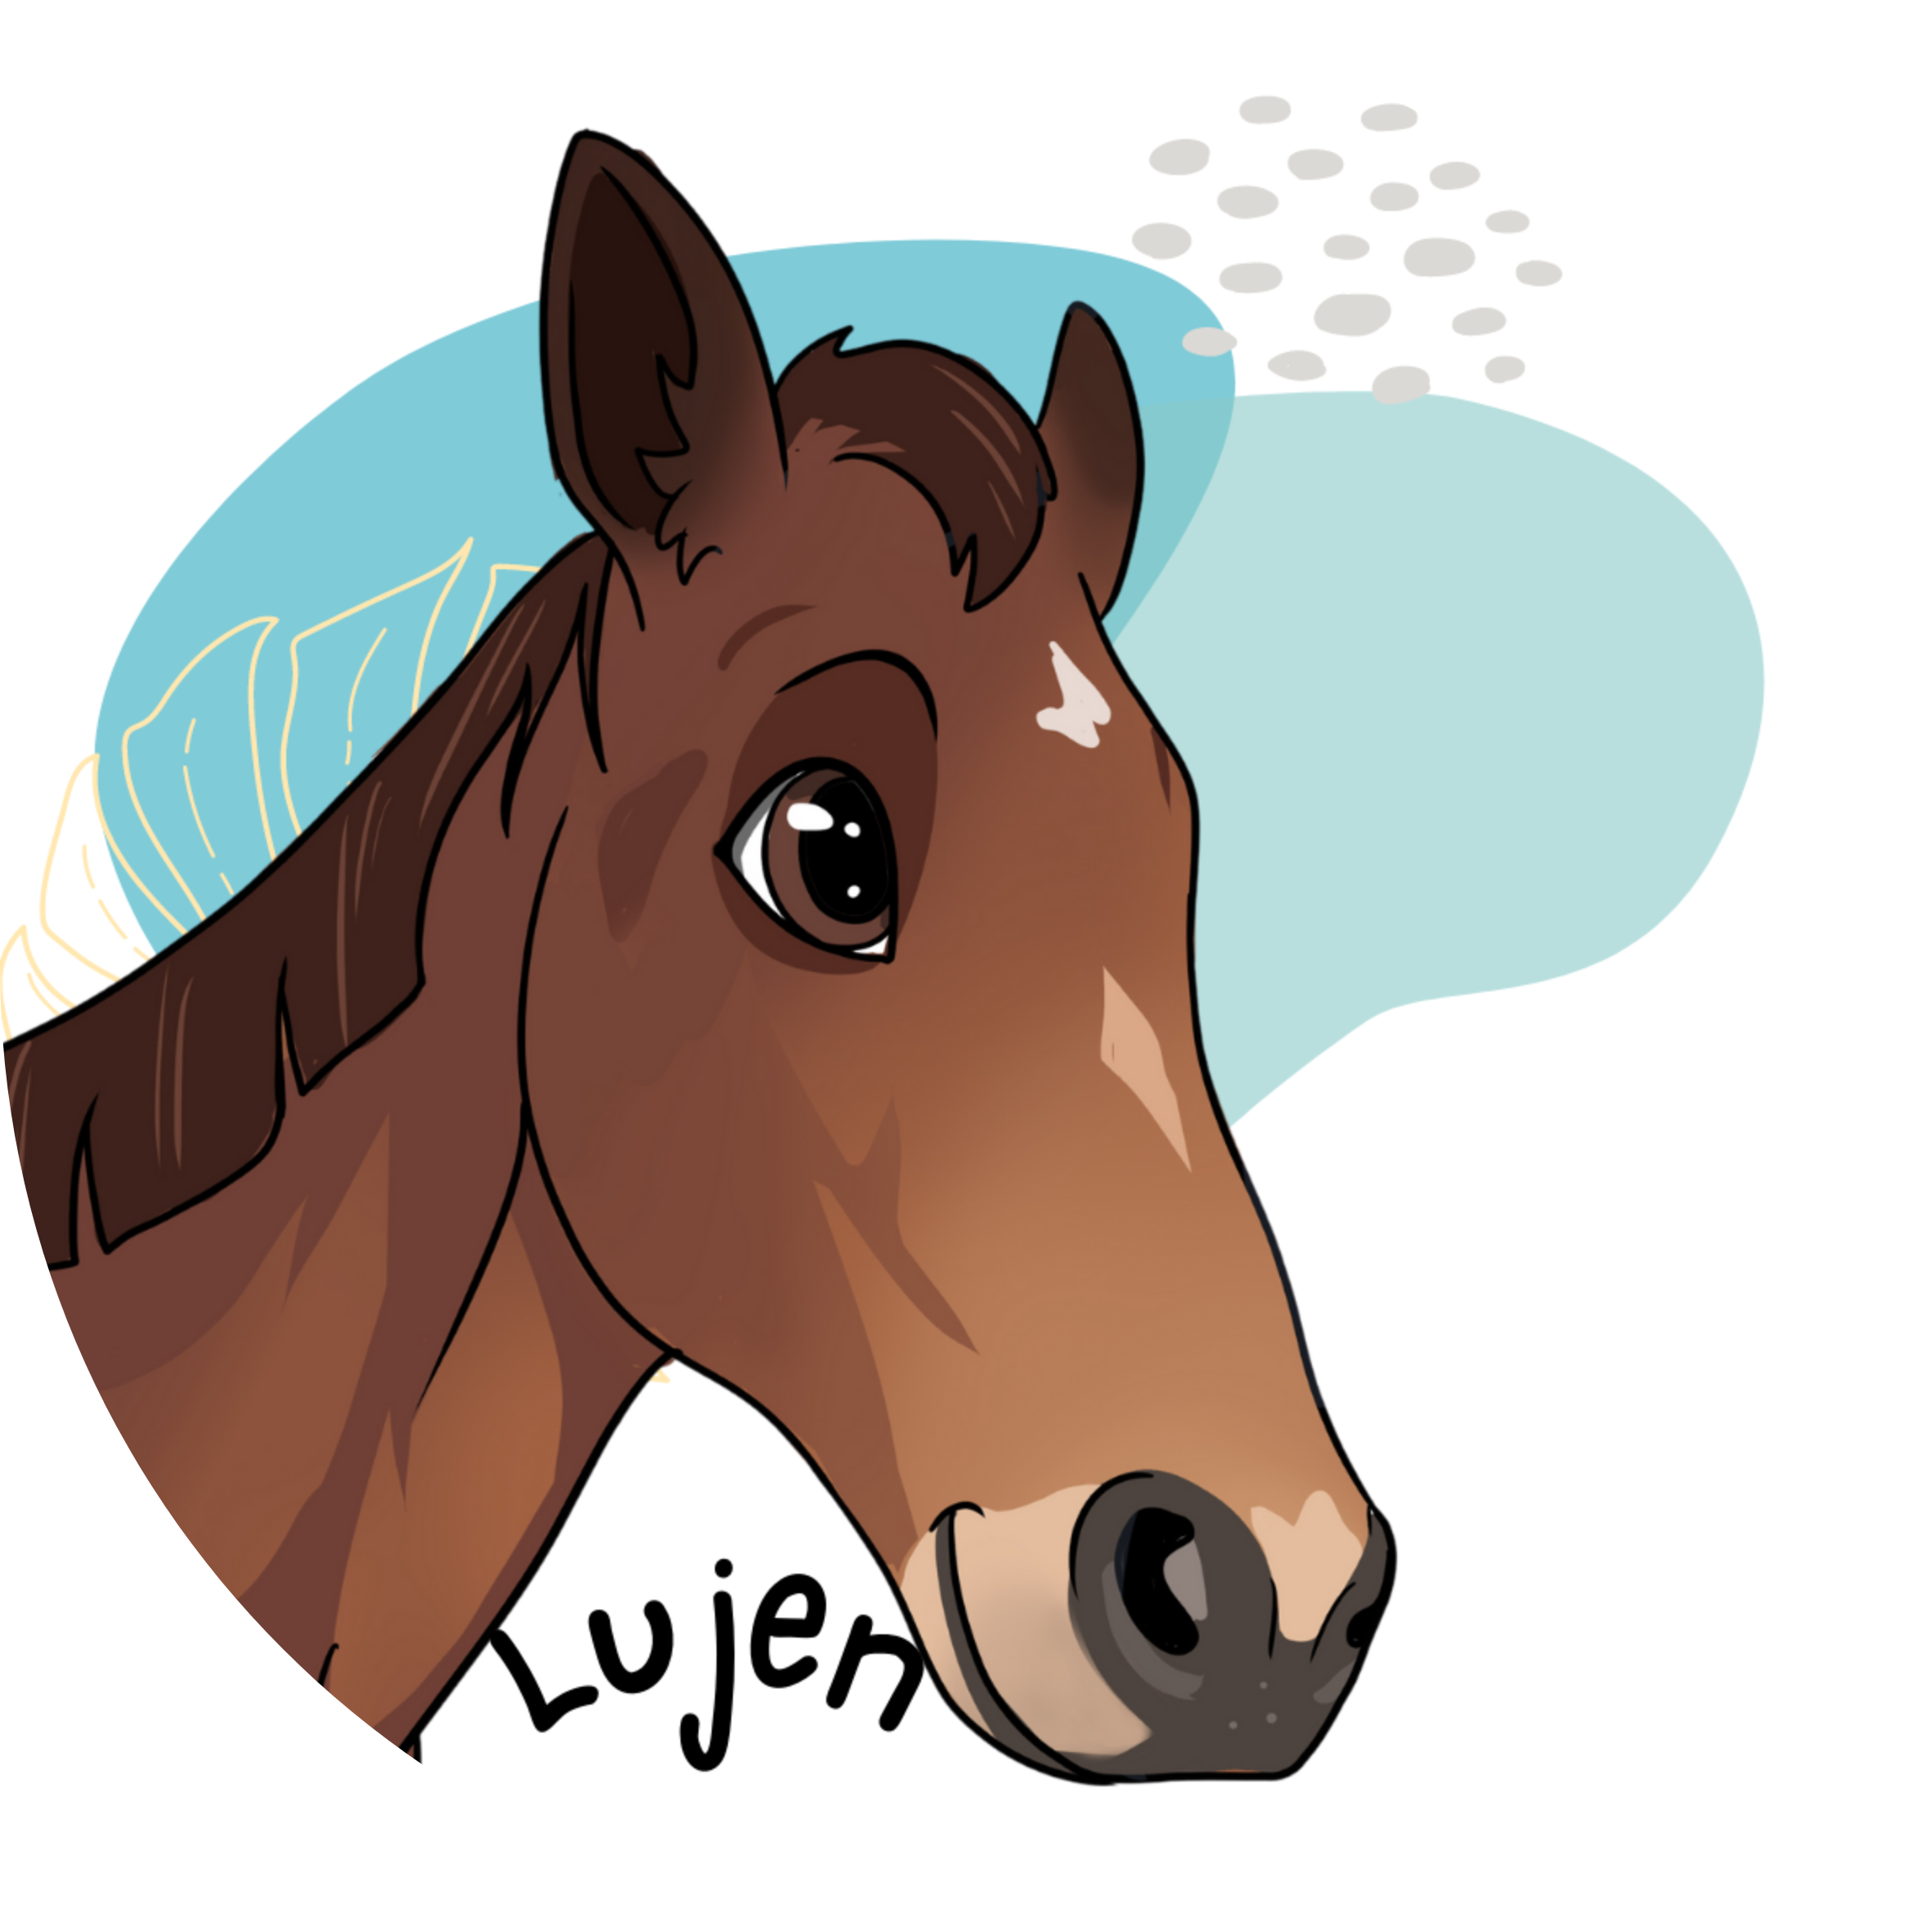 Lujen - Horse sticker .png large.png